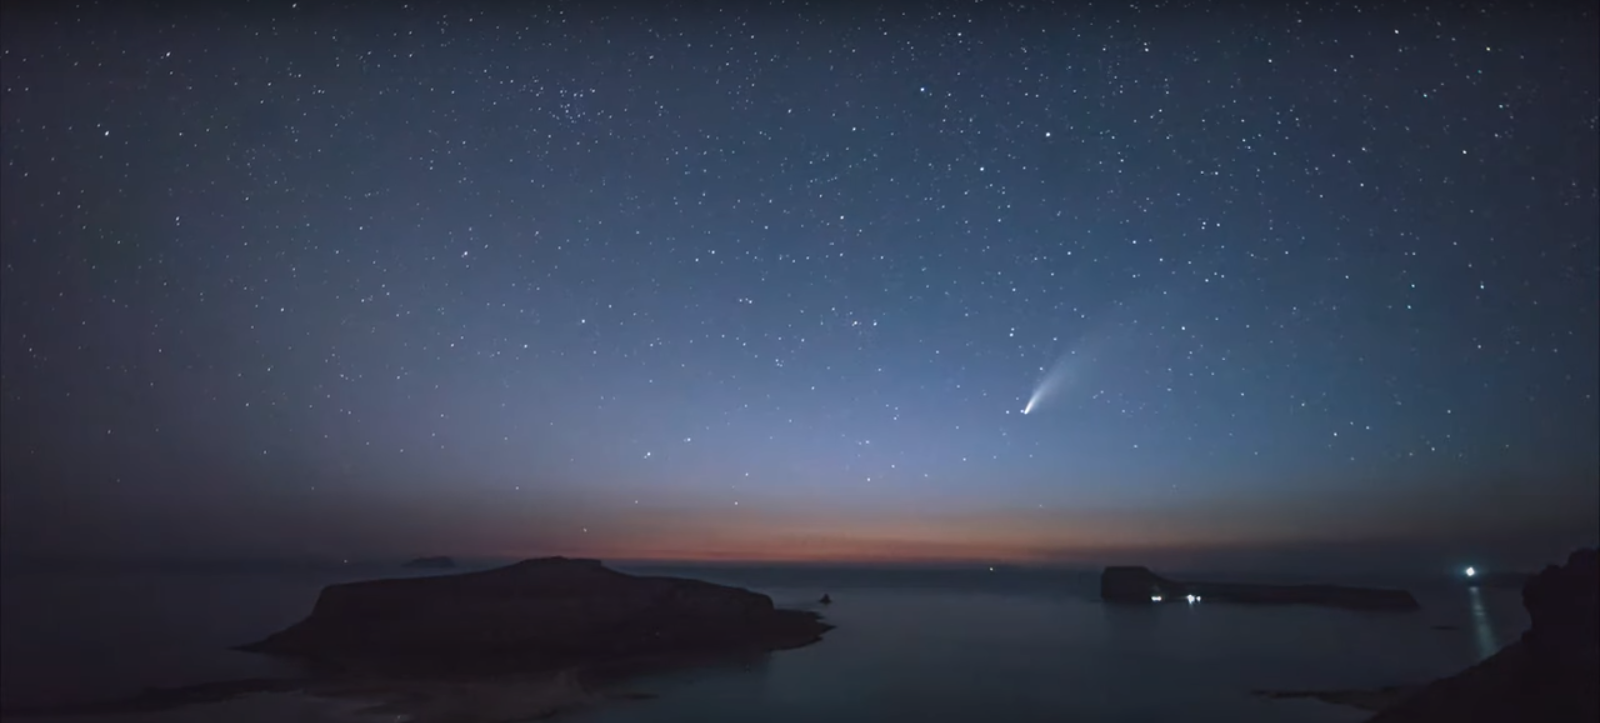 Χανιά: Μαγικό γεγονός! Κομήτης περνάει πάνω από τον ονειρεμένο Μπάλο στην Κίσαμο (βιντεο)